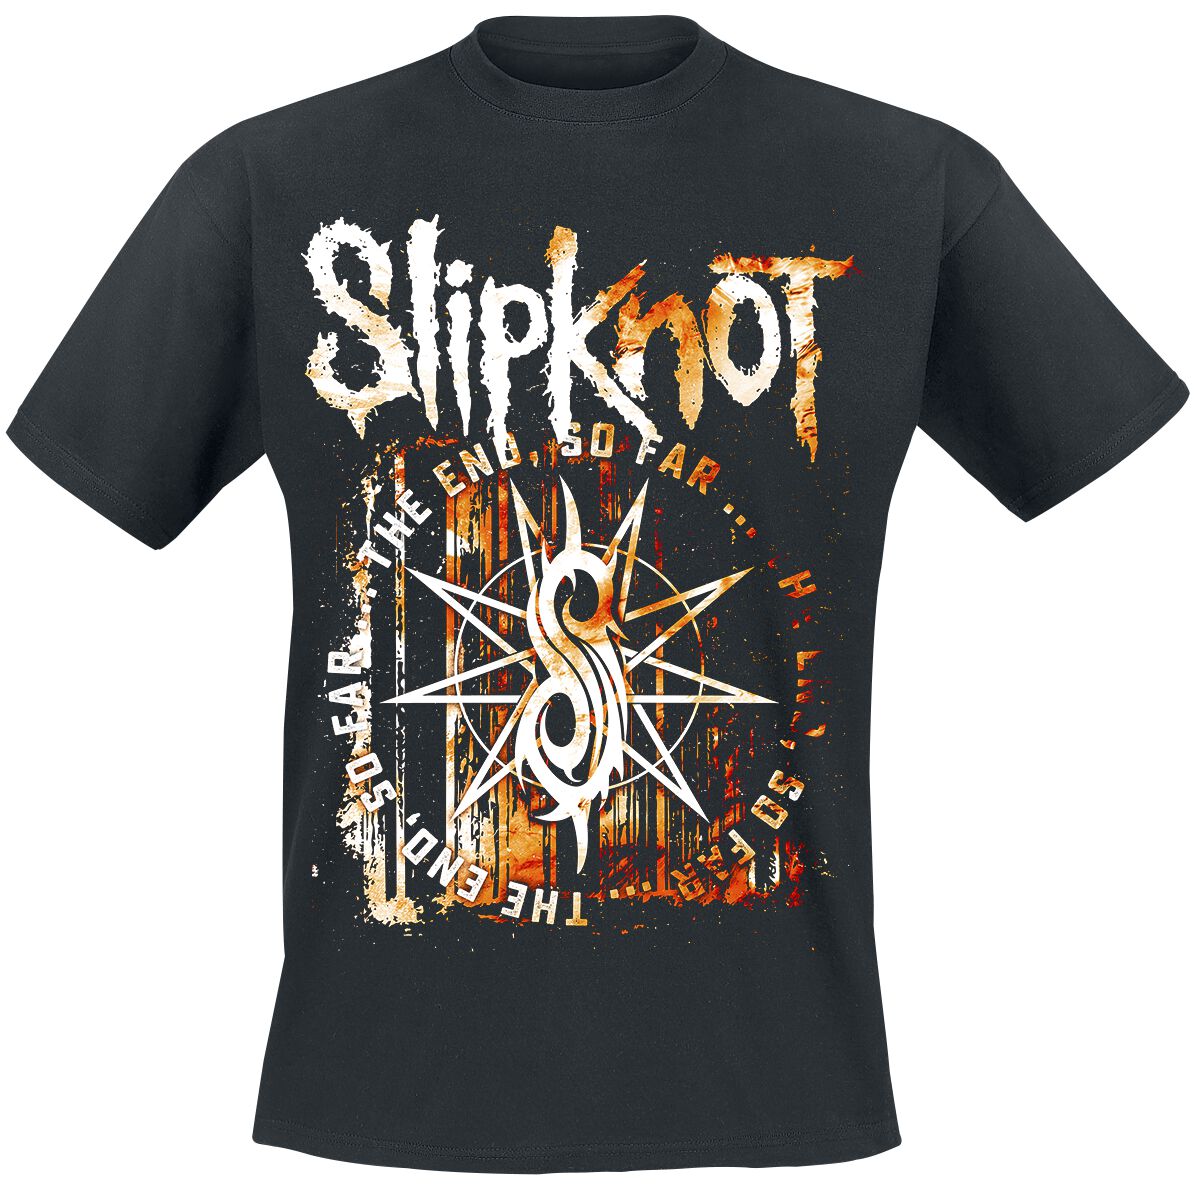 Slipknot T-Shirt - The End, So Far Splatter - S bis XXL - für Männer - Größe S - schwarz  - Lizenziertes Merchandise!